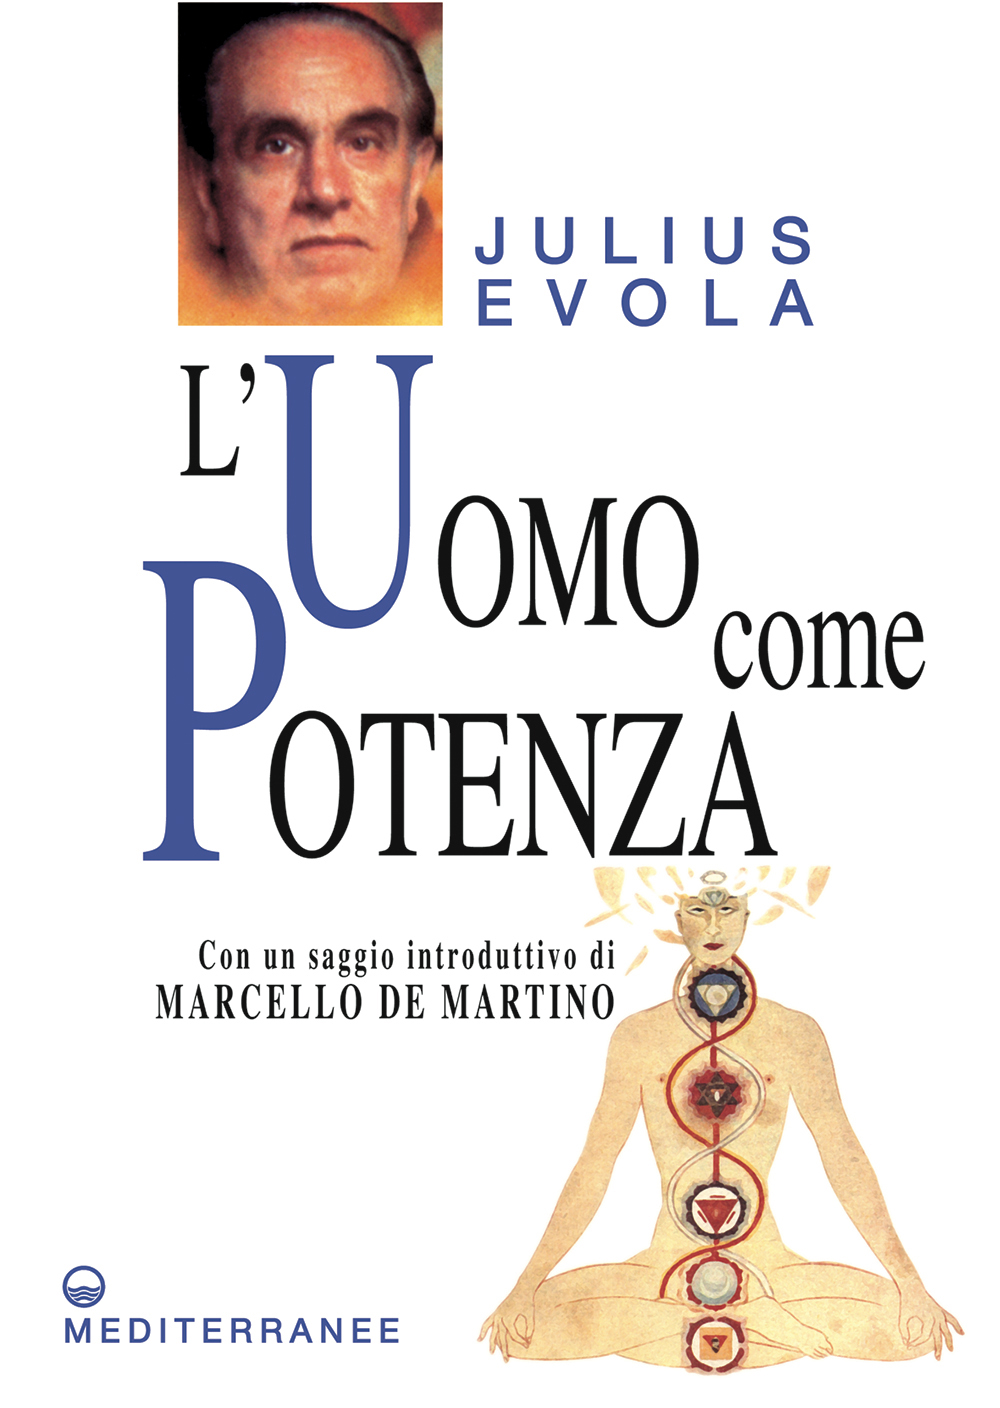 Libri Julius Evola - L' Uomo Come Potenza NUOVO SIGILLATO, EDIZIONE DEL 30/11/2010 SUBITO DISPONIBILE